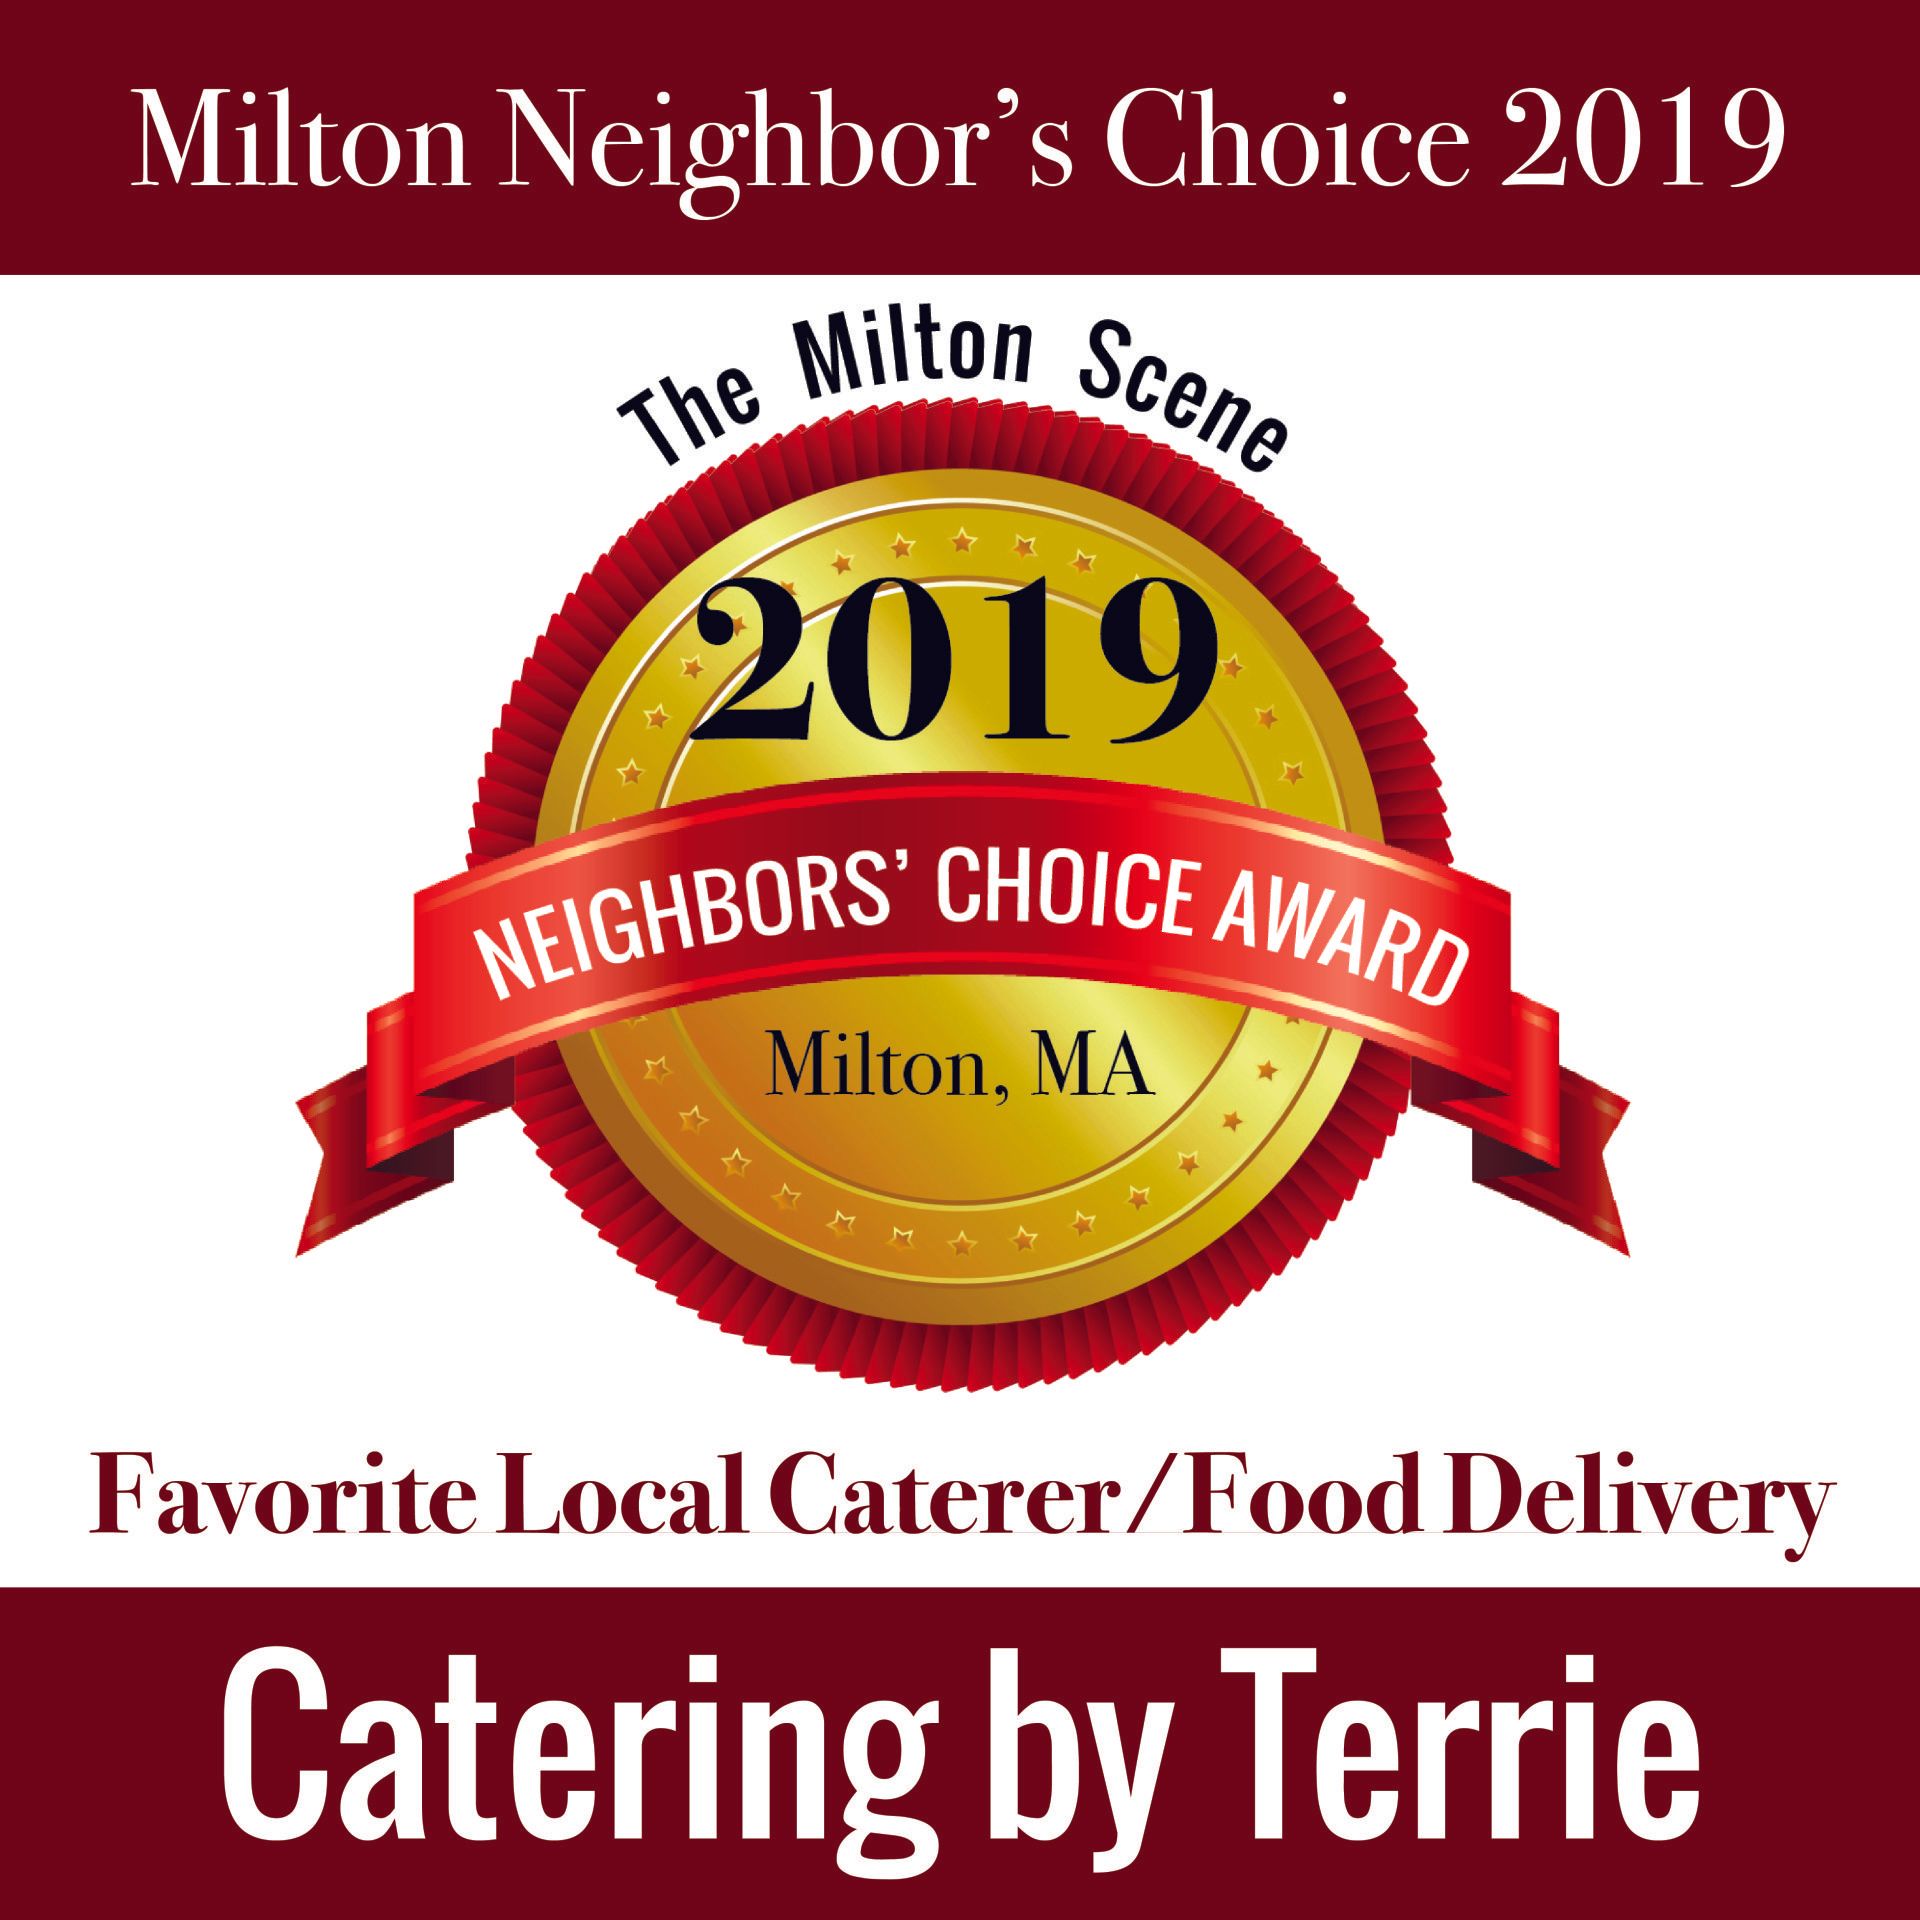 Milton Neighbor's Choice 2019 Award